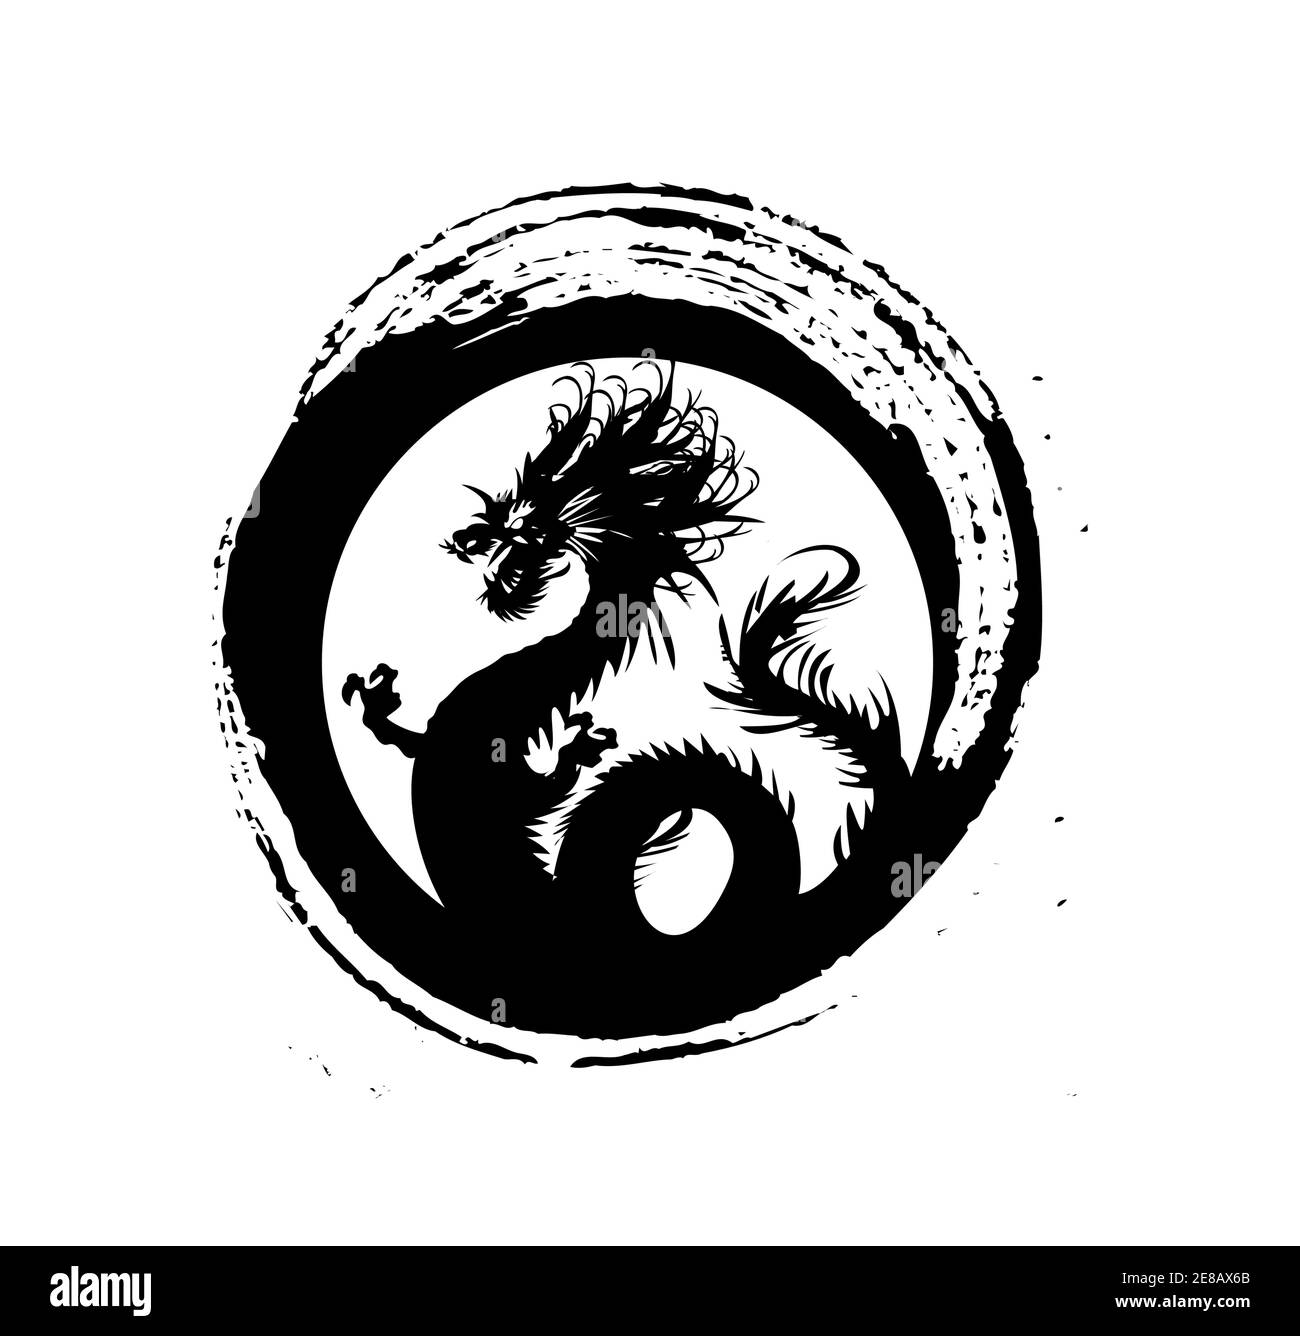 Legendary Golden Dragon In Brush Paint Japan Art Style For Logo Vector And Illustration Stock Vector Image Art Alamy